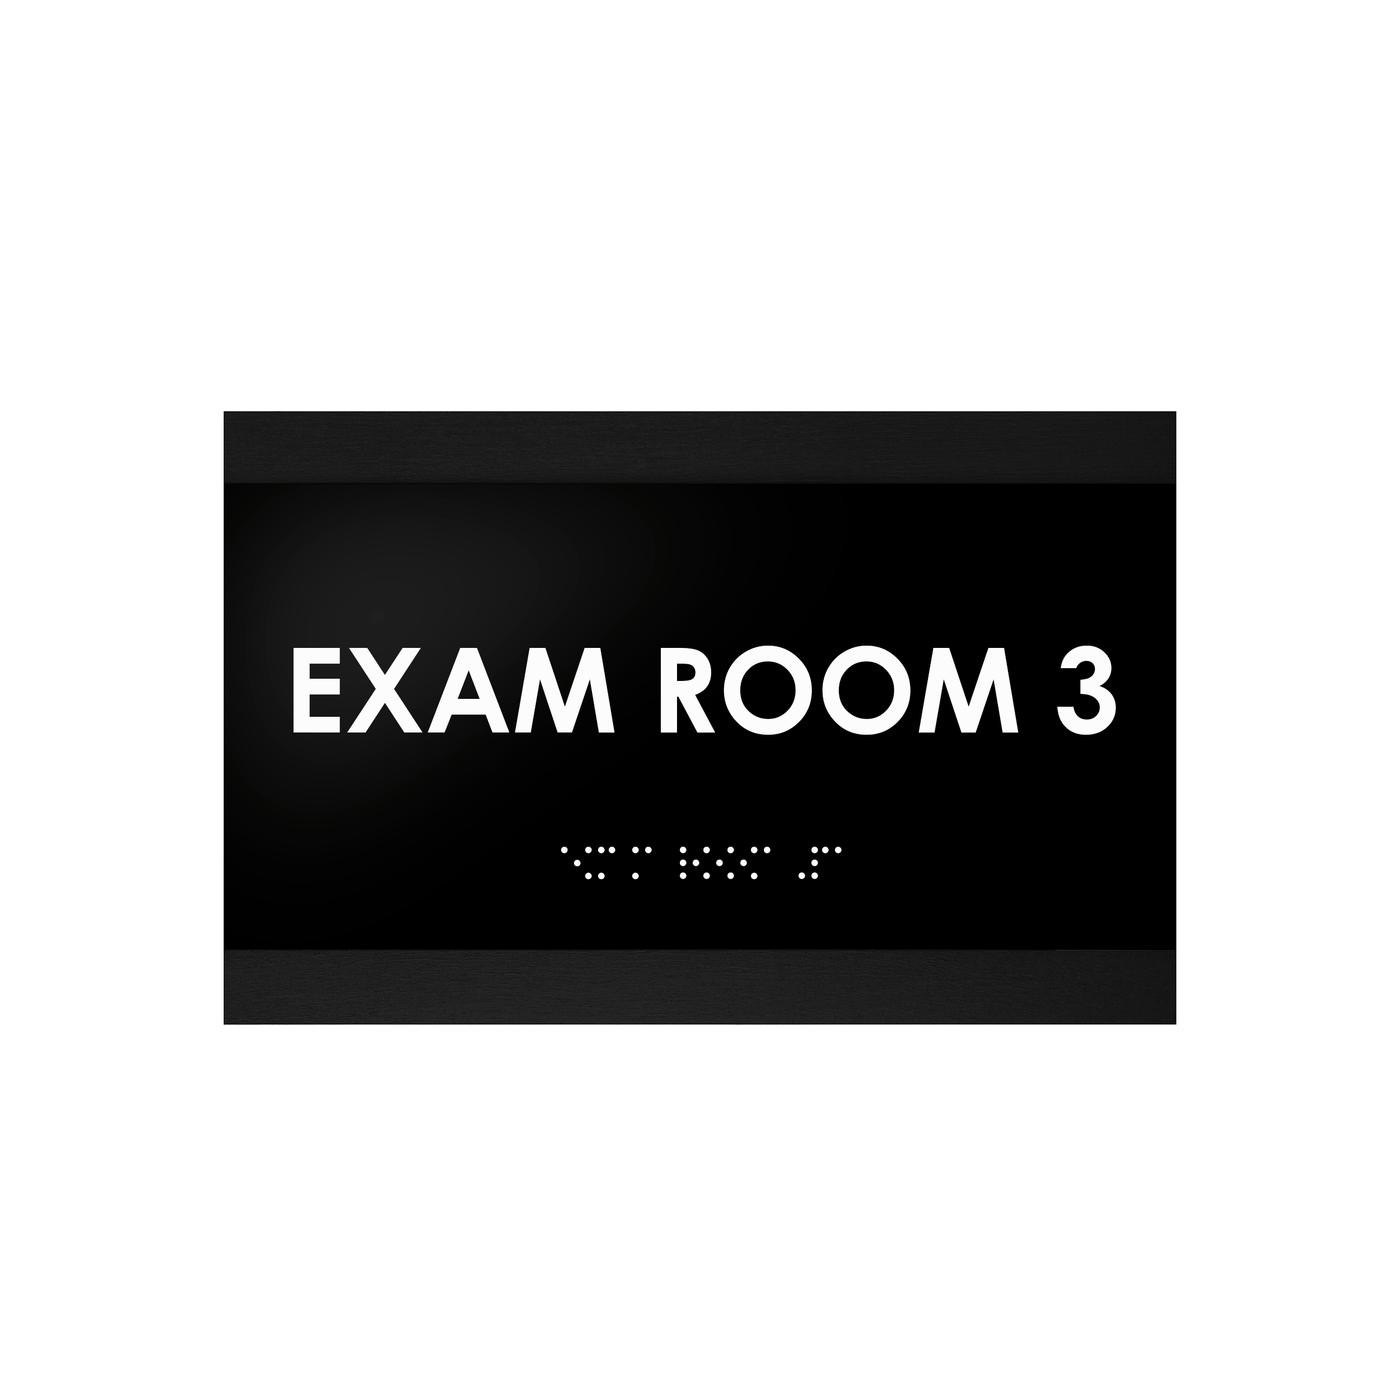 Exam Room - Custom Wood Door Sign "Buro" Design